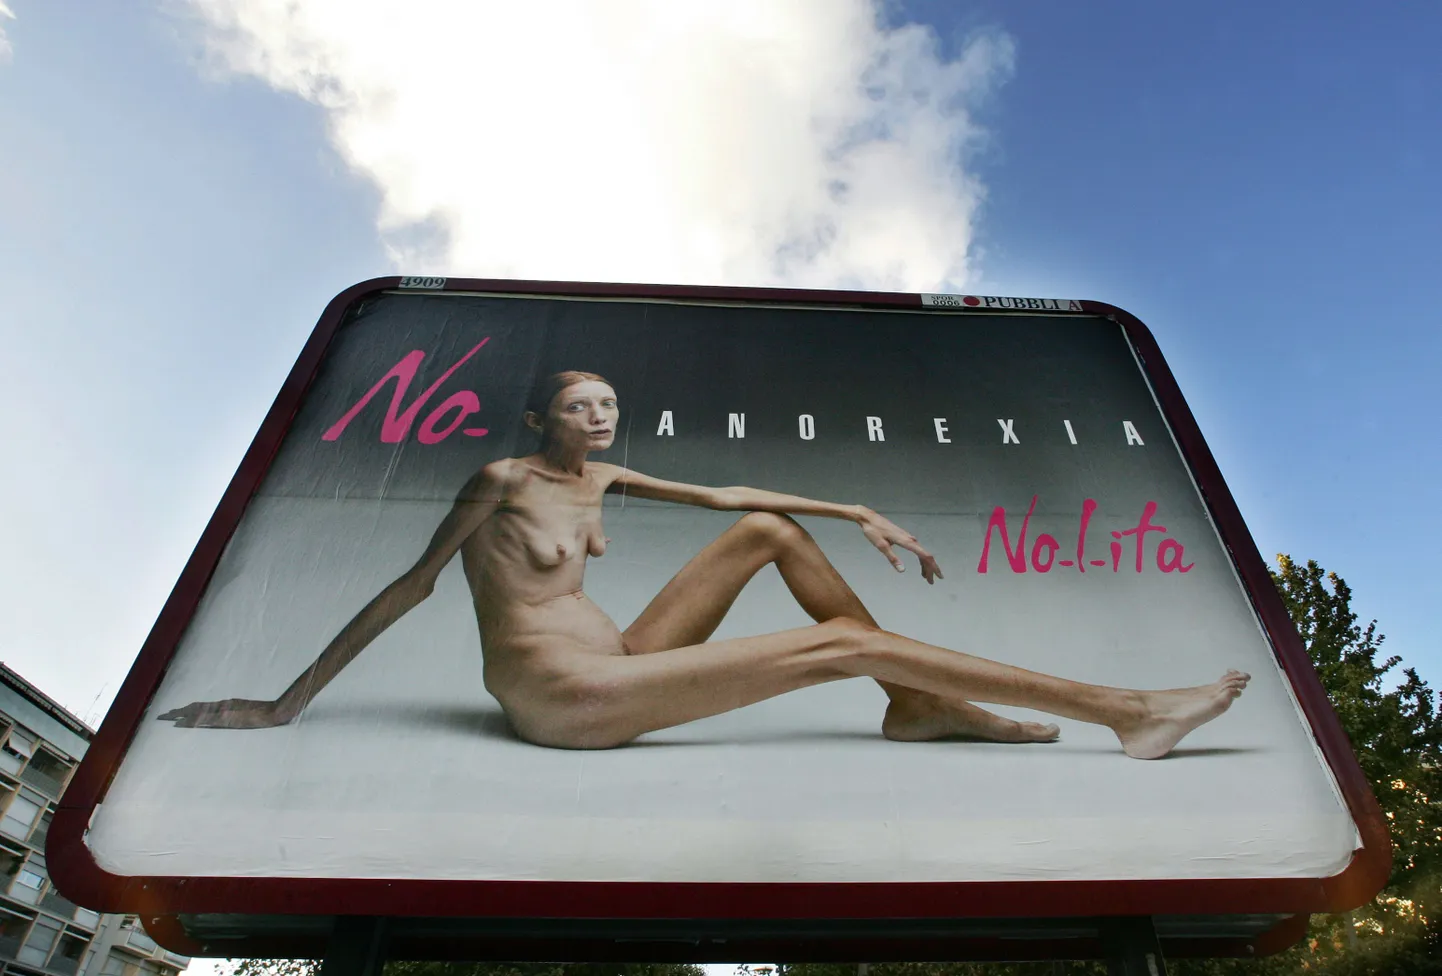 Рекламный плакат в центре Рима. Рекламная кампания против анорексии. Иллюстративное фото.